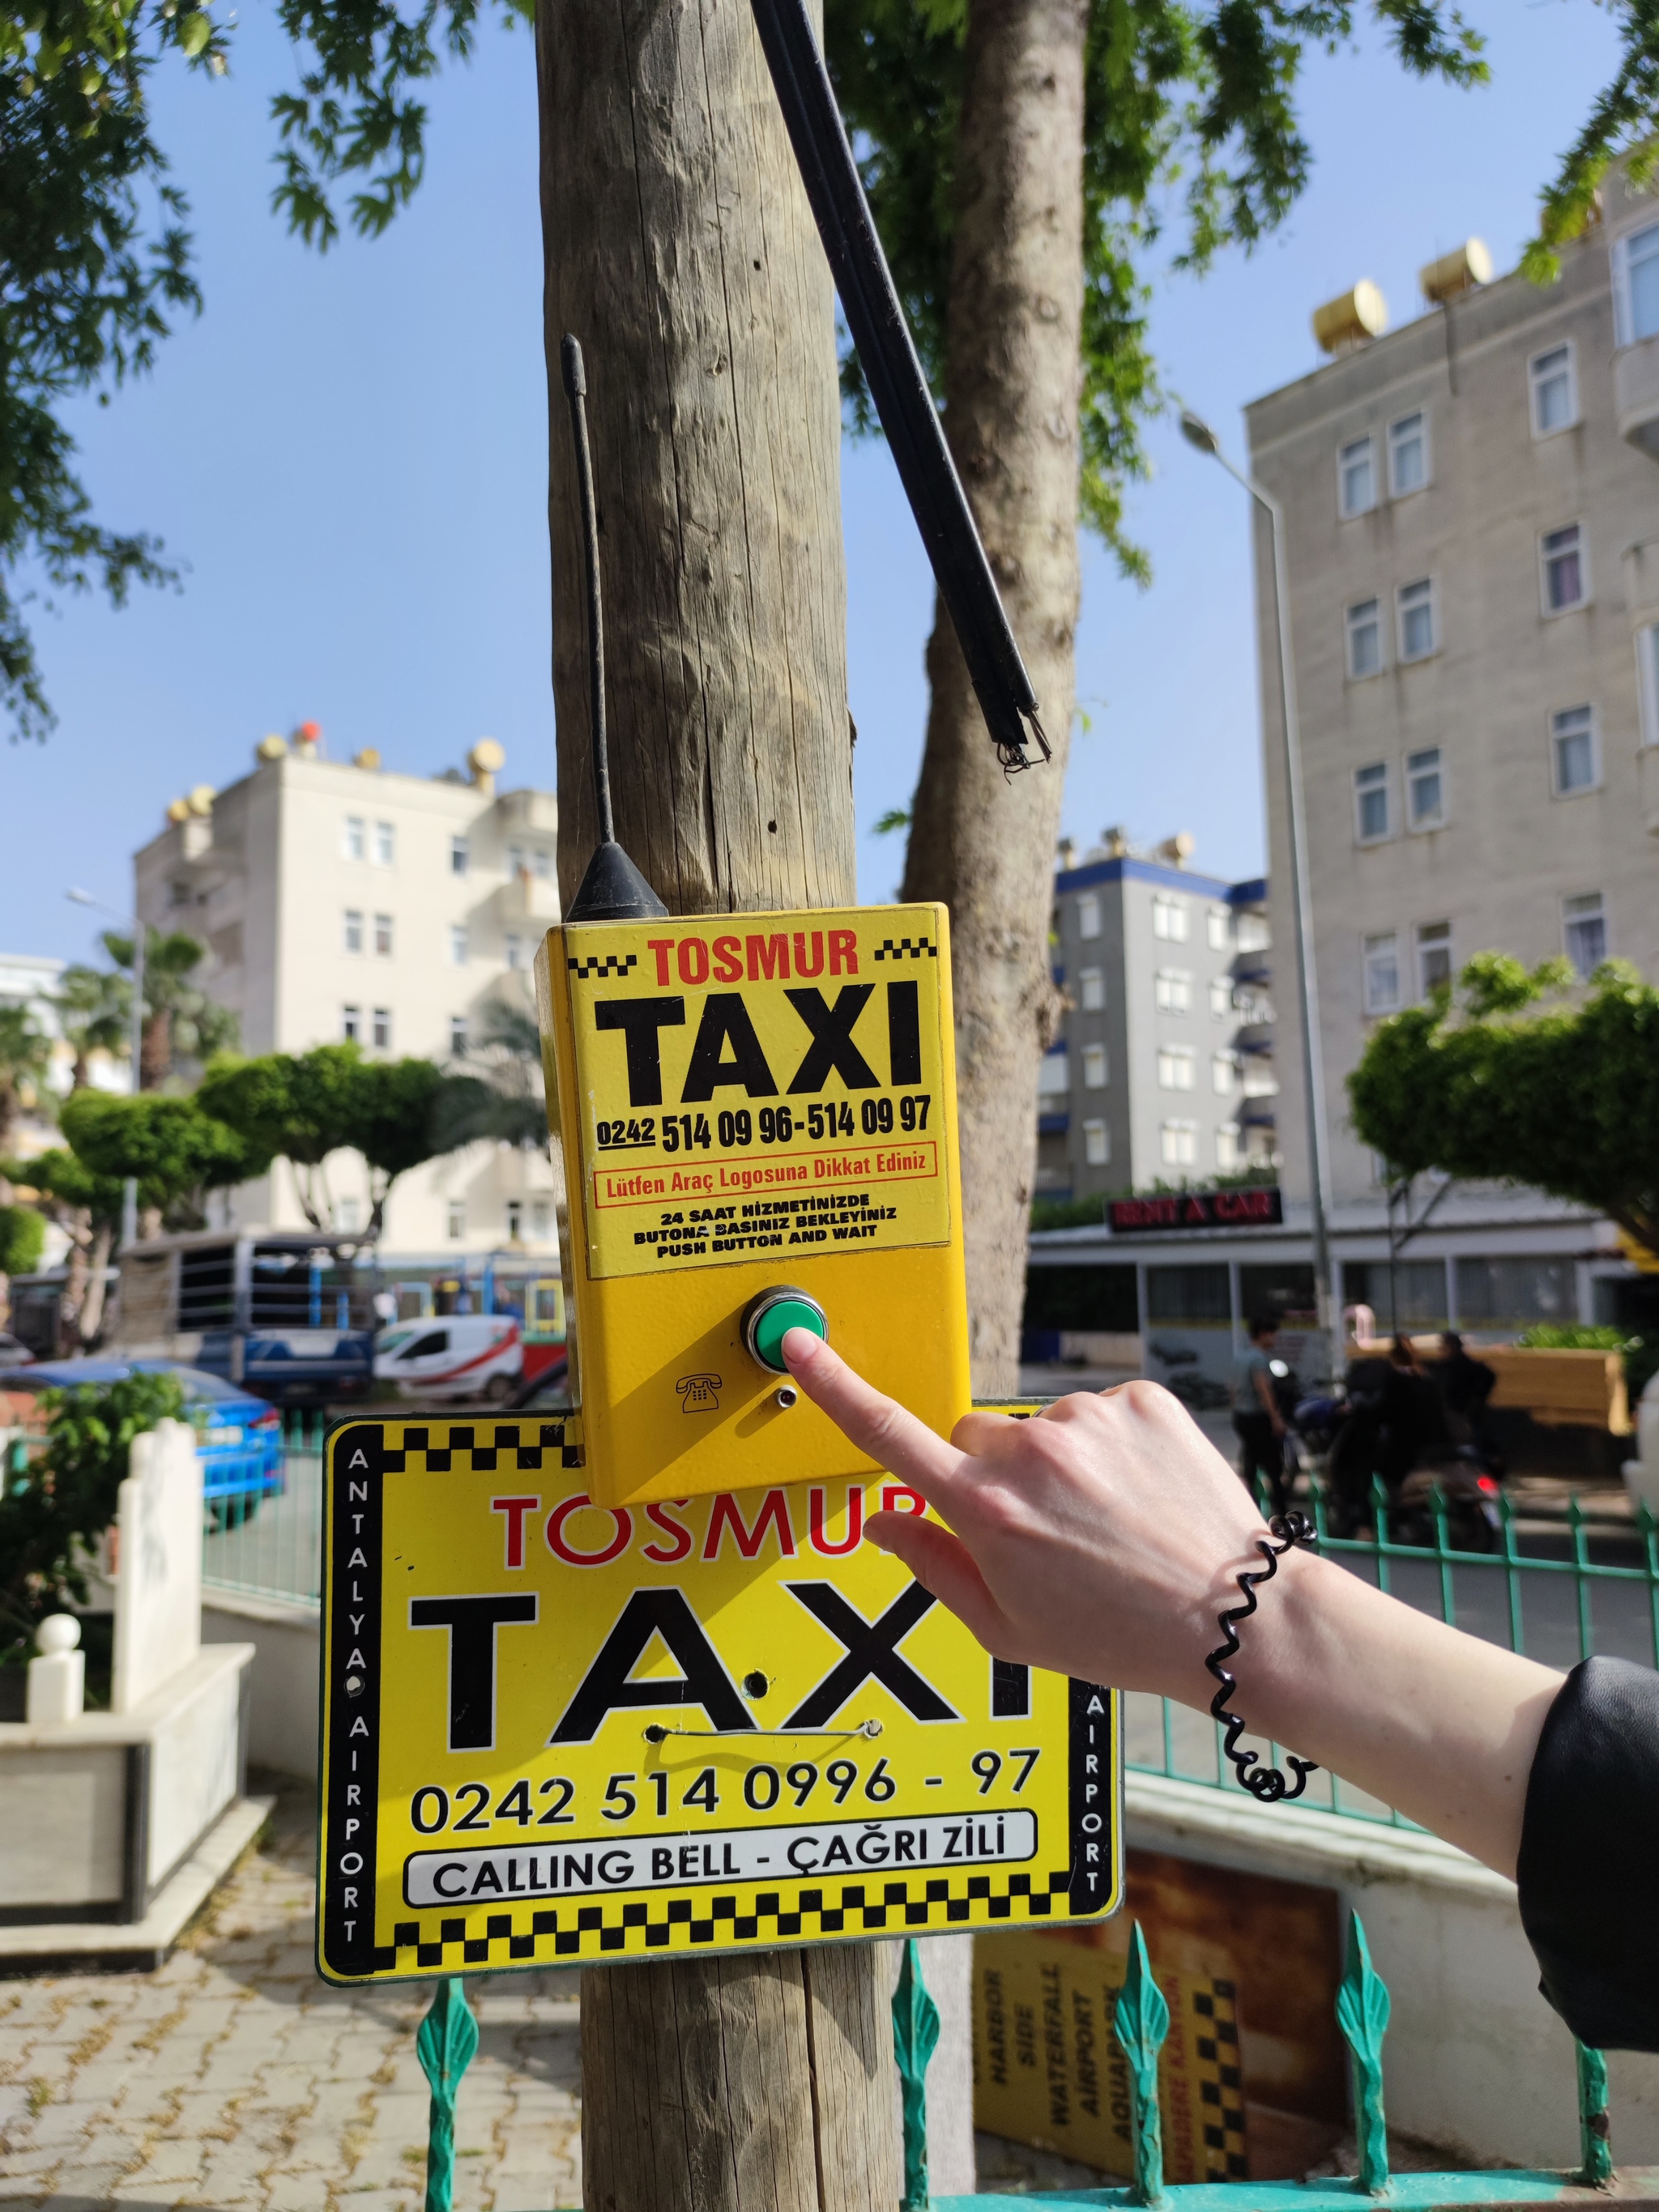 Такси турции